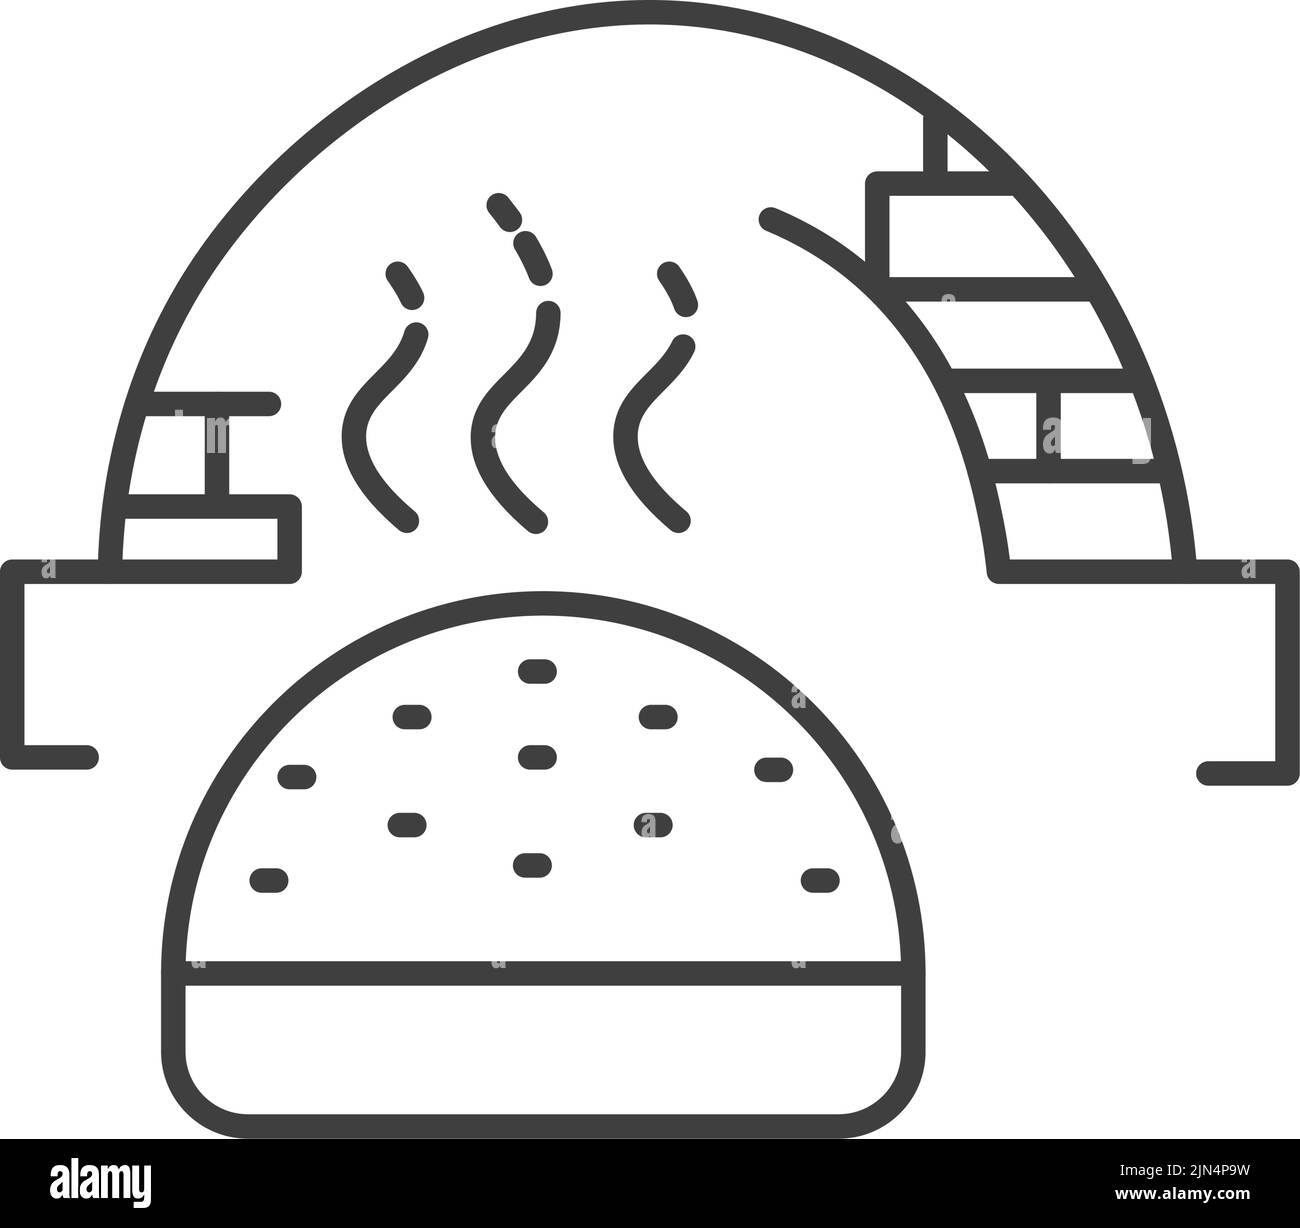 Logo der Bäckerei, Brot aus heissem Ofen, Vektor Stock Vektor